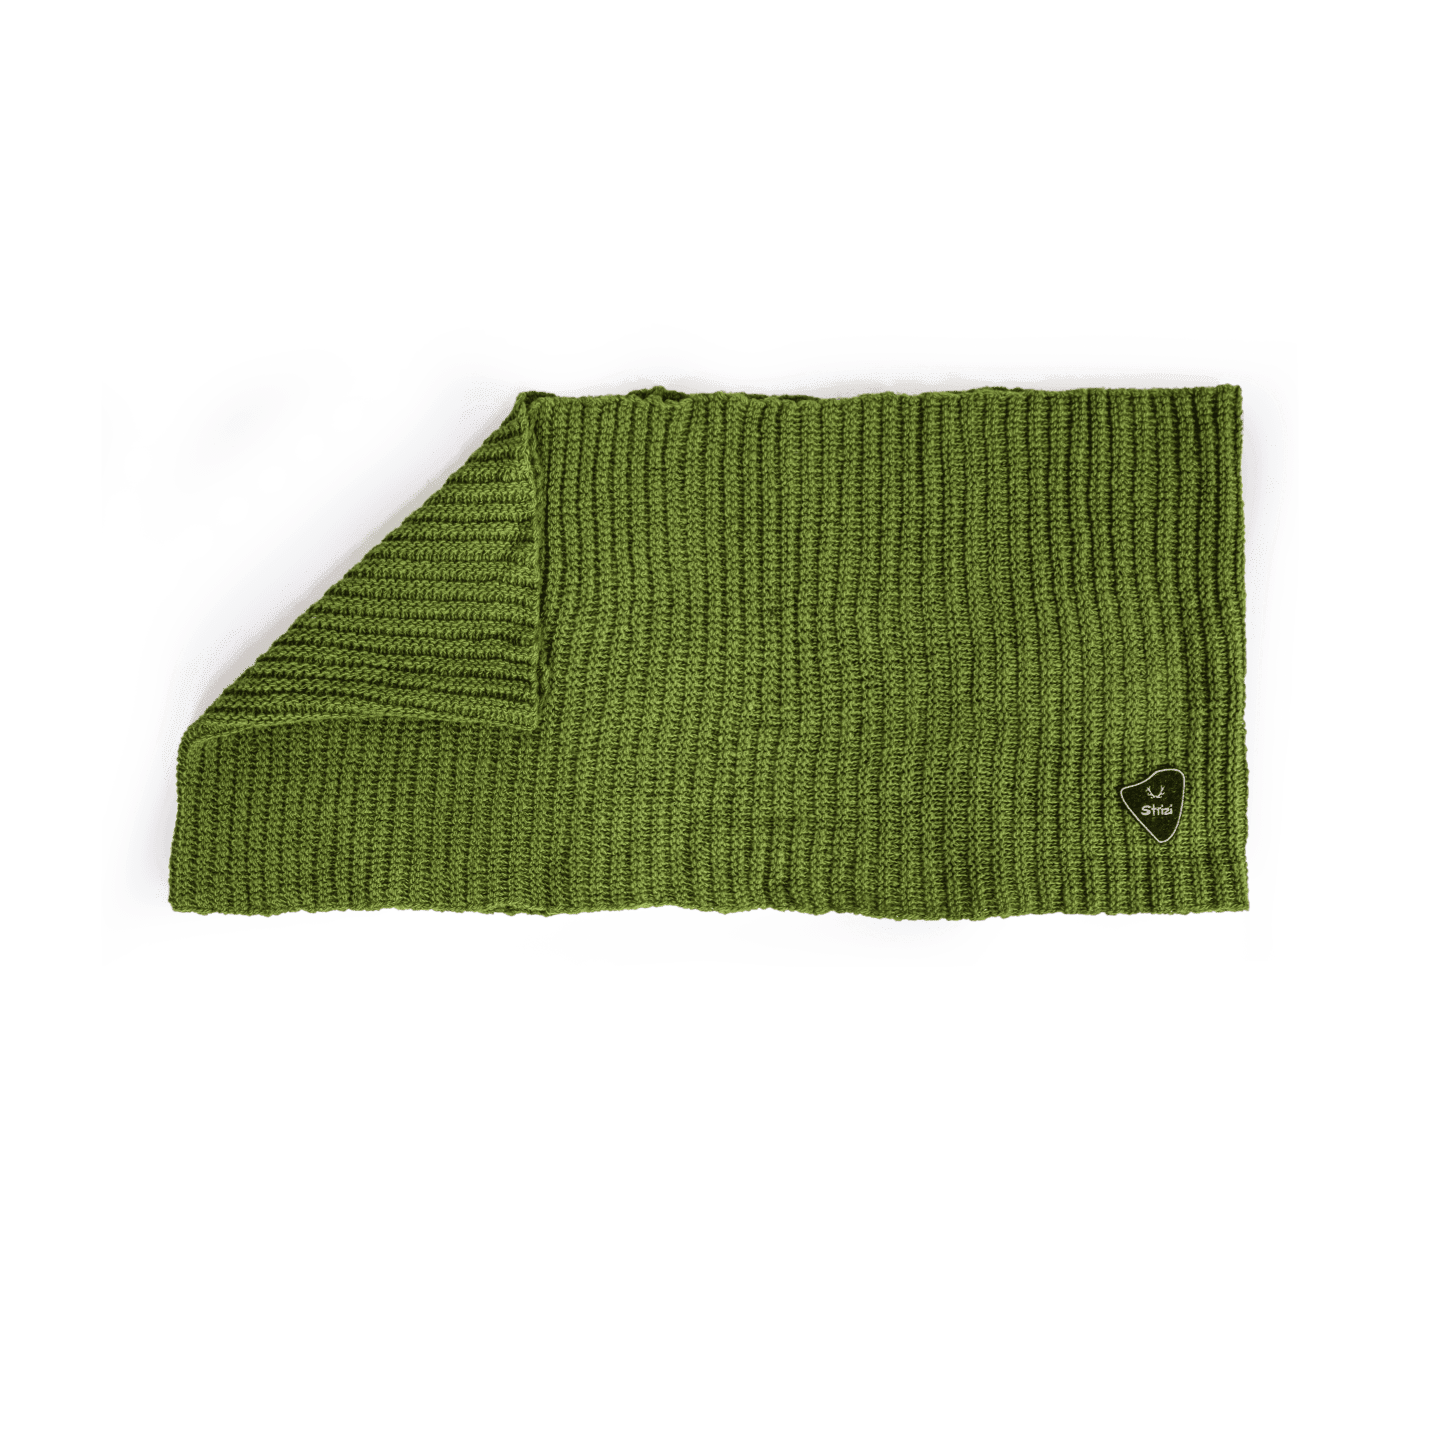 Strizi Erwachsenen Schal gruen 2 - Strizi Loop scarf green